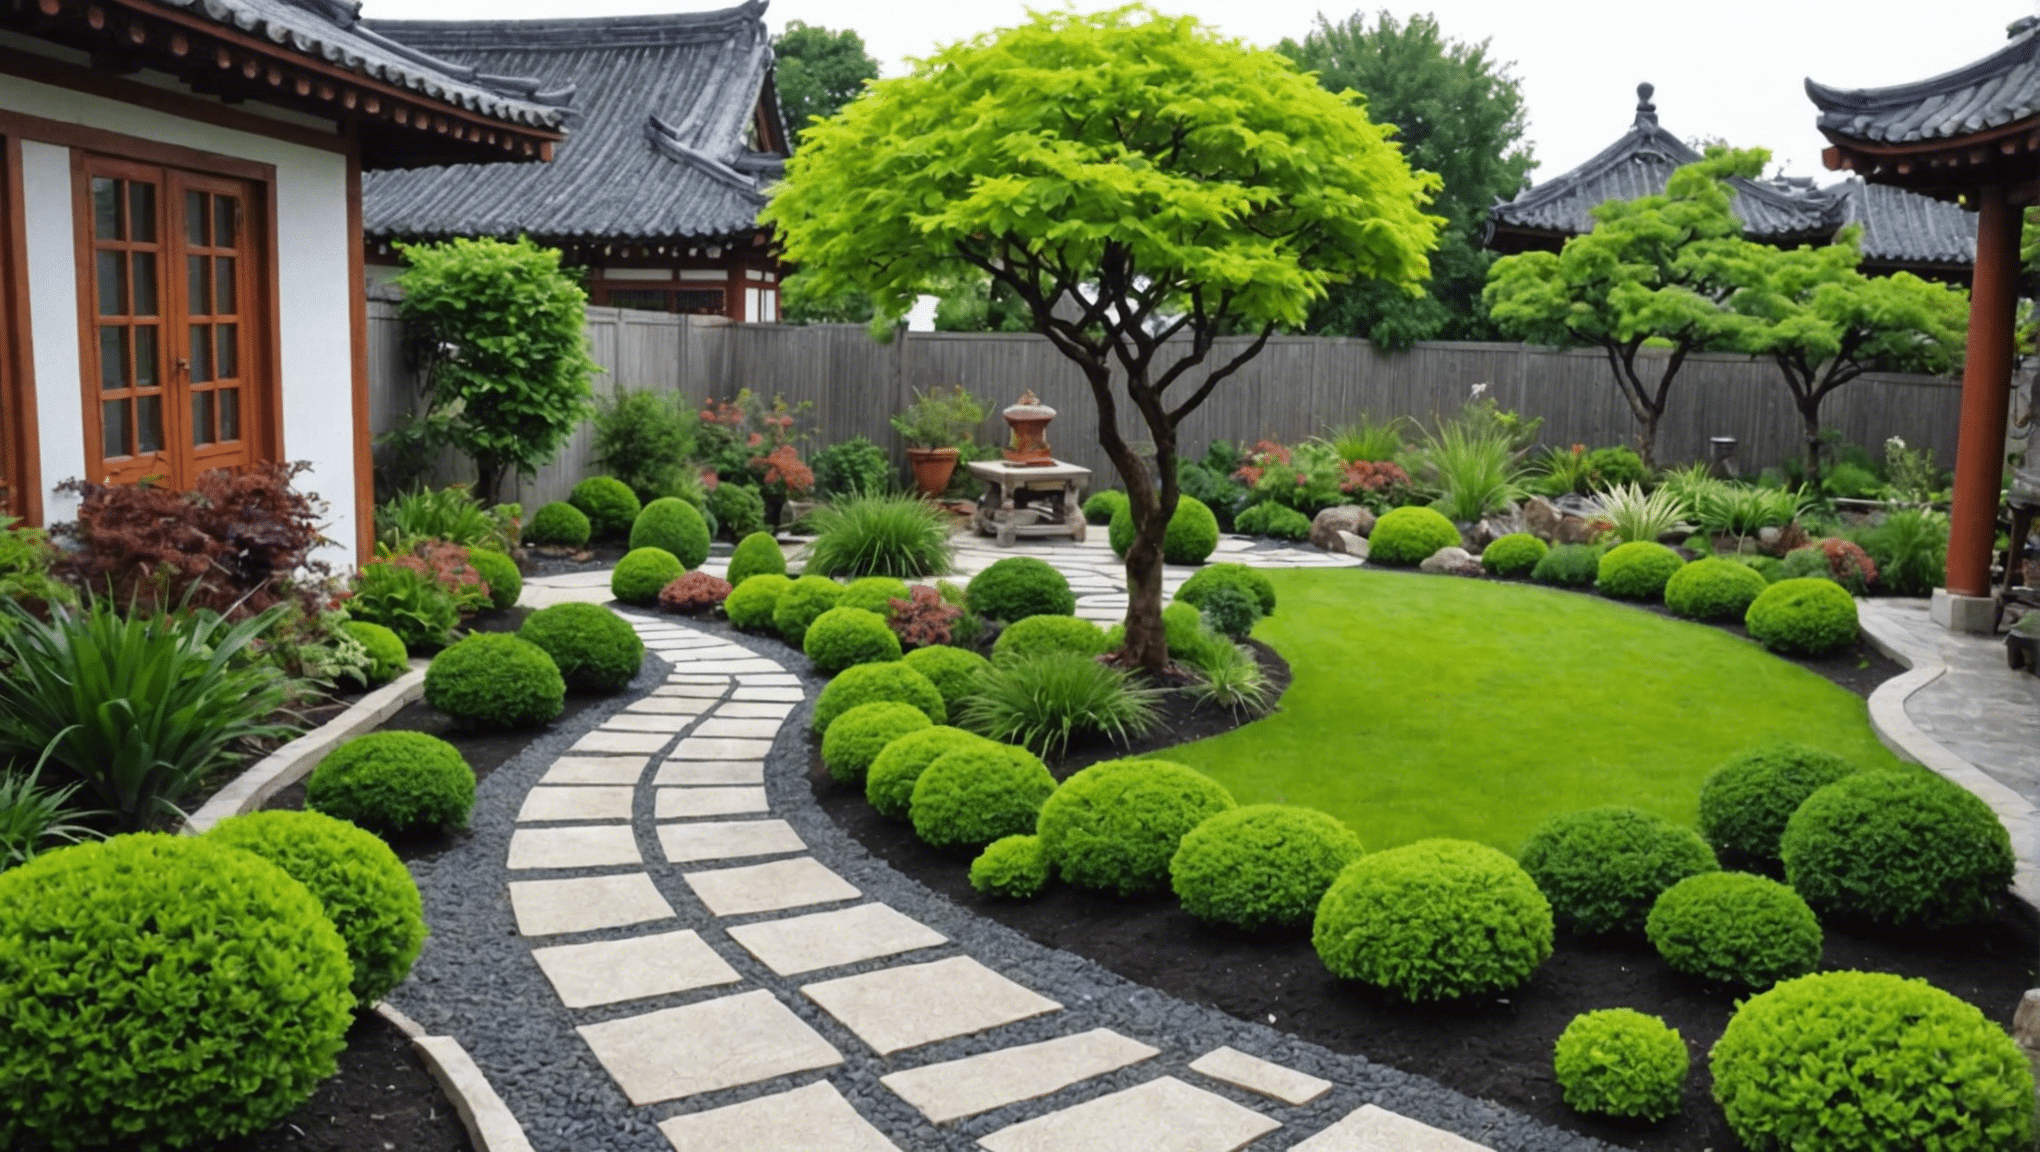 découvrez des idées de jardinage asiatique créatives et inspirantes pour votre espace extérieur grâce à nos conseils d'experts et notre inspiration. des jardins japonais traditionnels aux designs zen modernes, trouvez l'inspiration parfaite pour votre oasis extérieure.